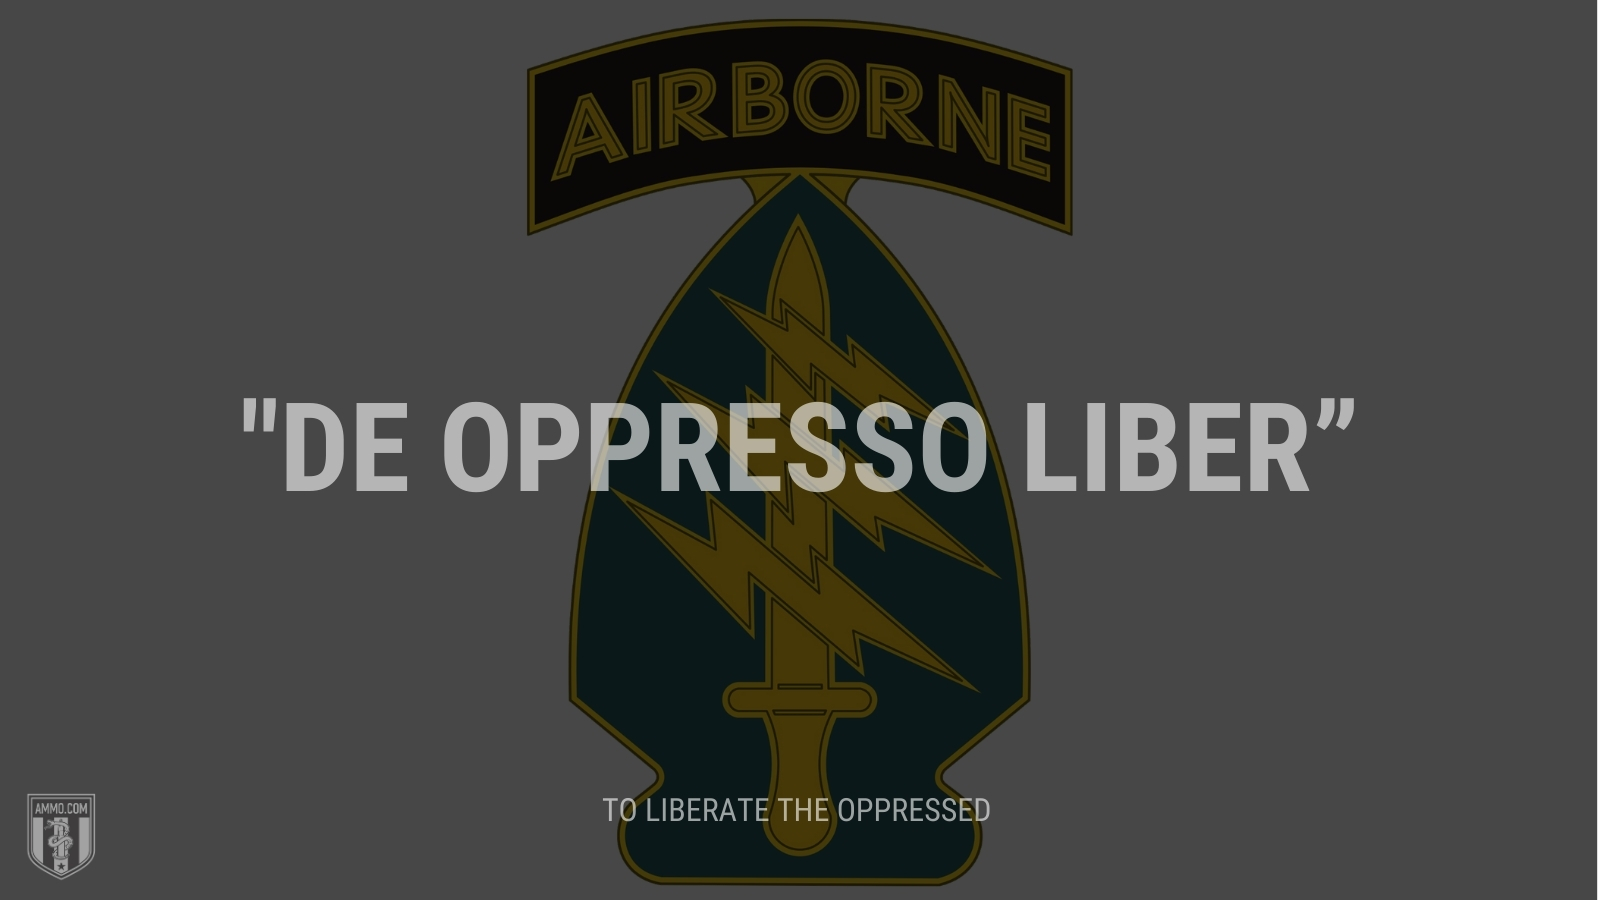 “De oppresso liber” - To liberate the oppressed